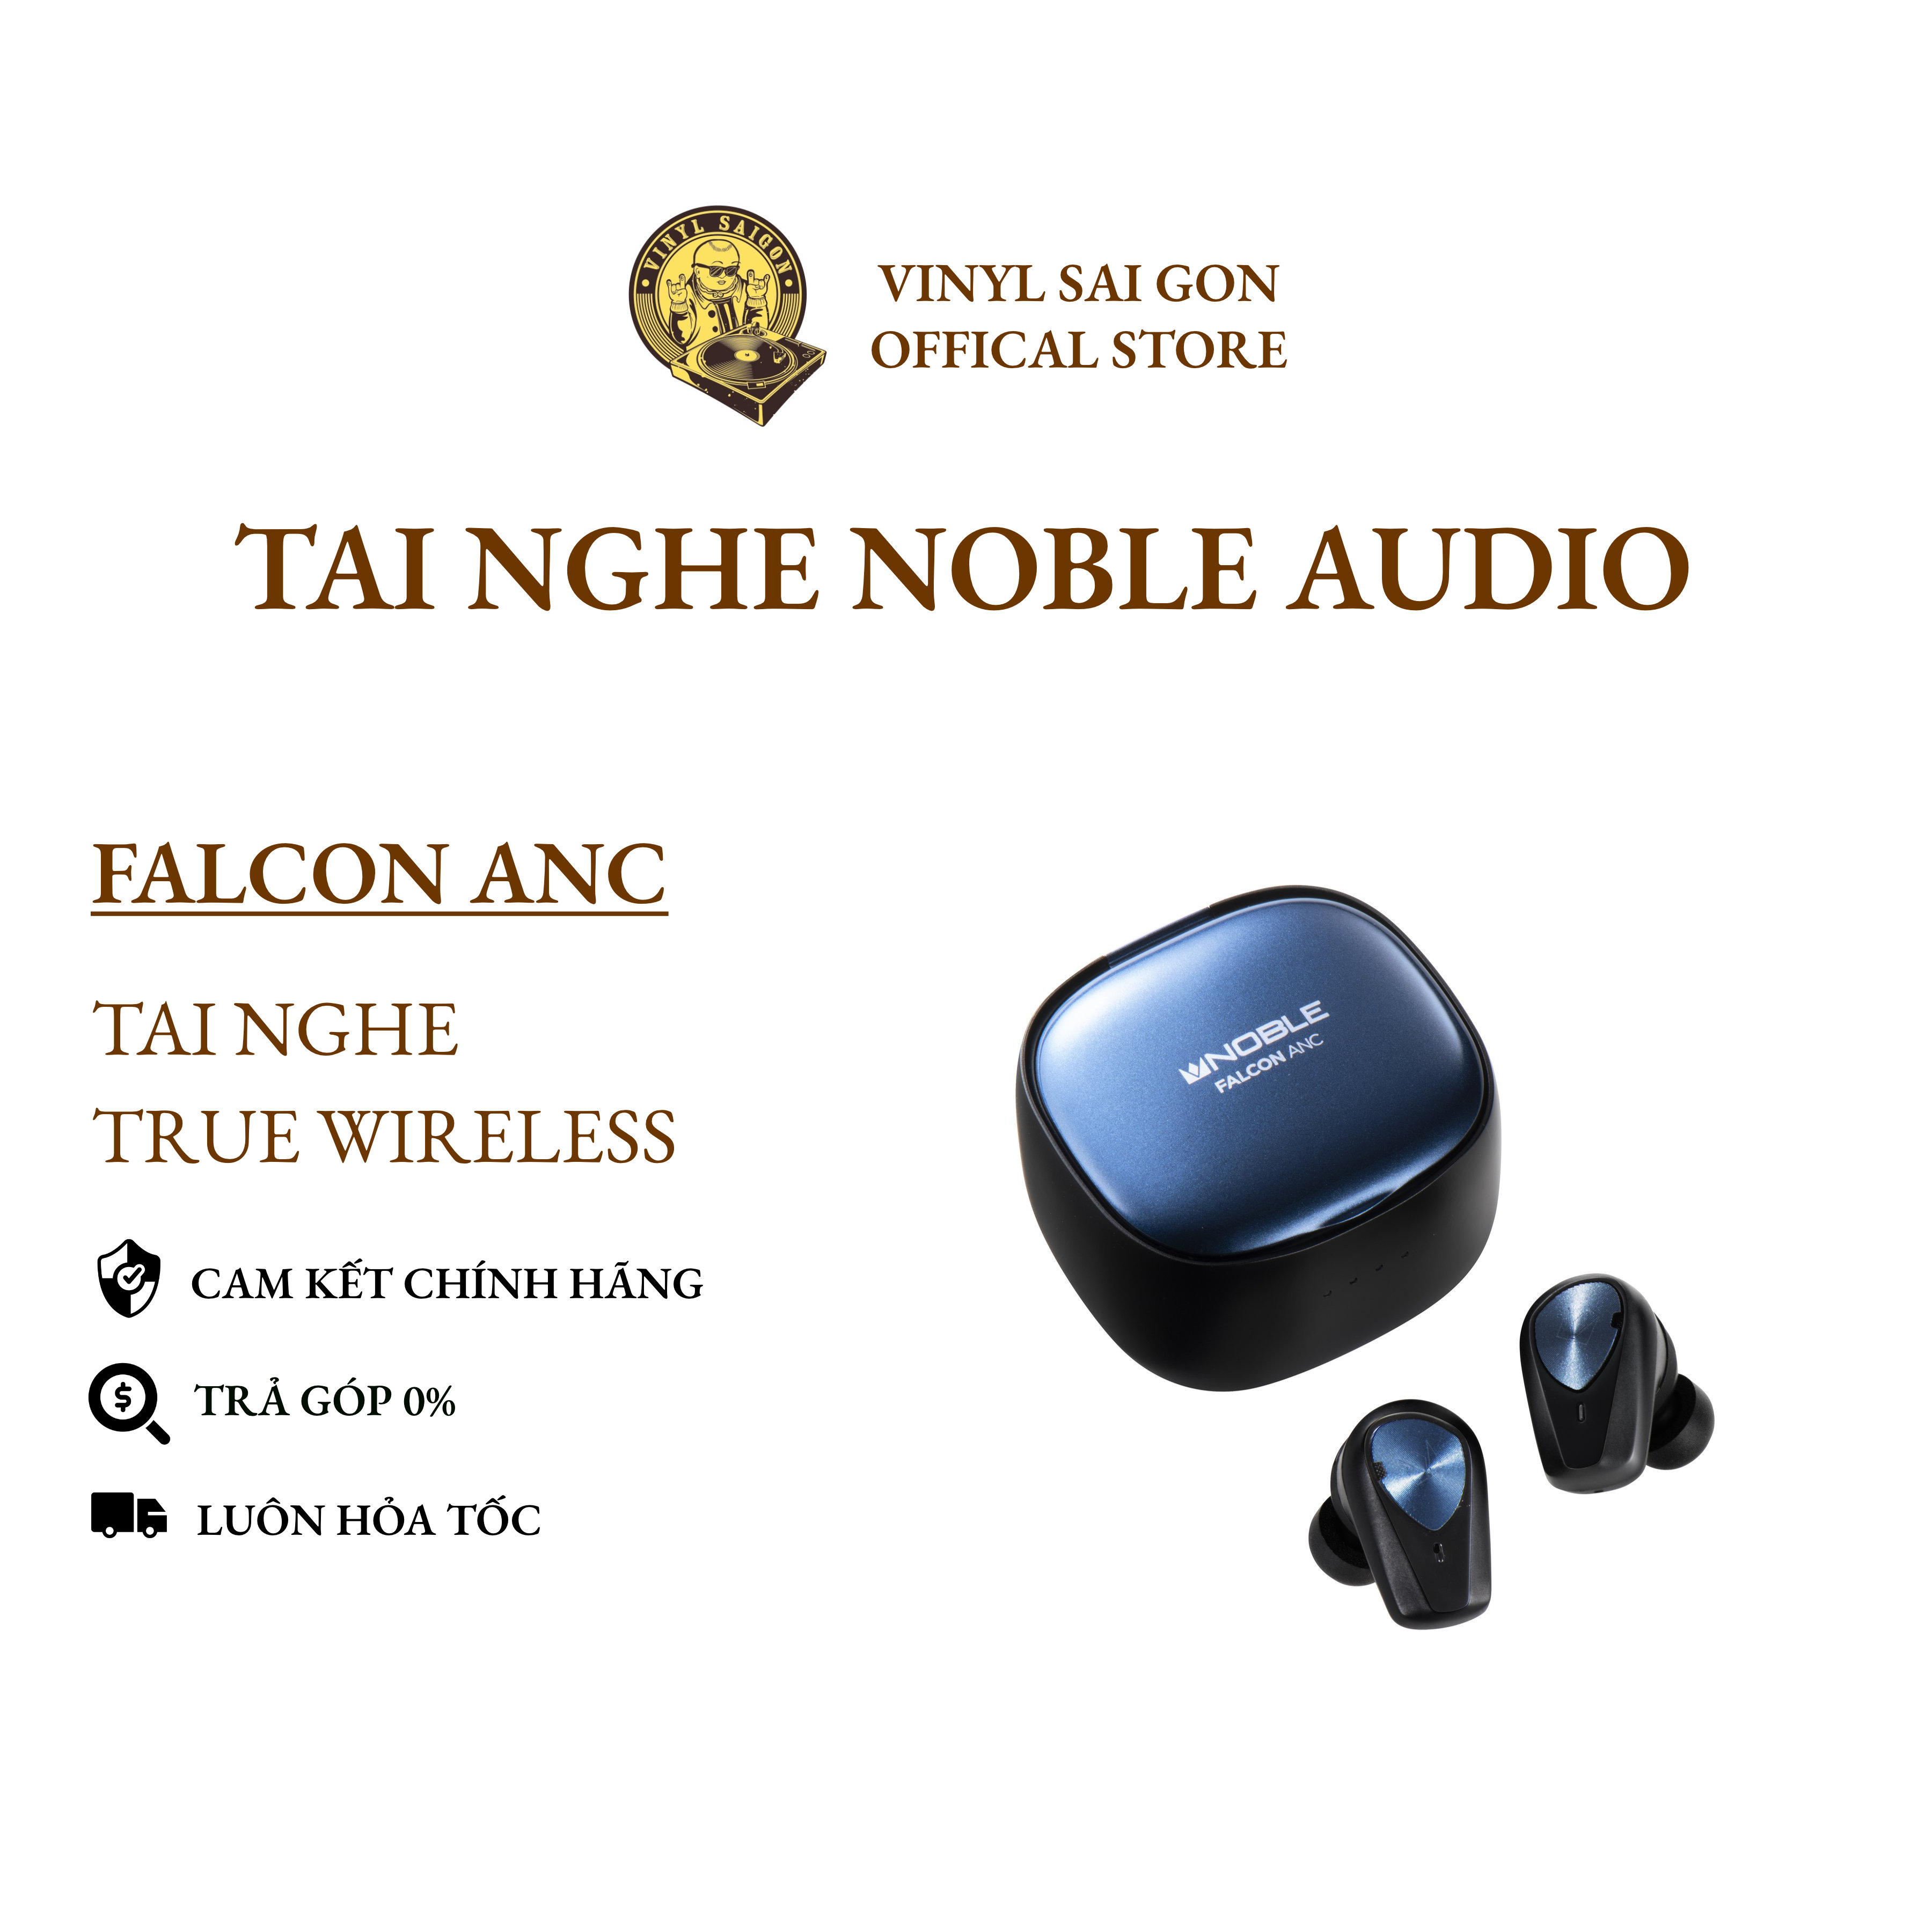 Tai Nghe Noble Falcon ANC   Bảo Hành Chính Hãng  Tháng   Lazada.vn